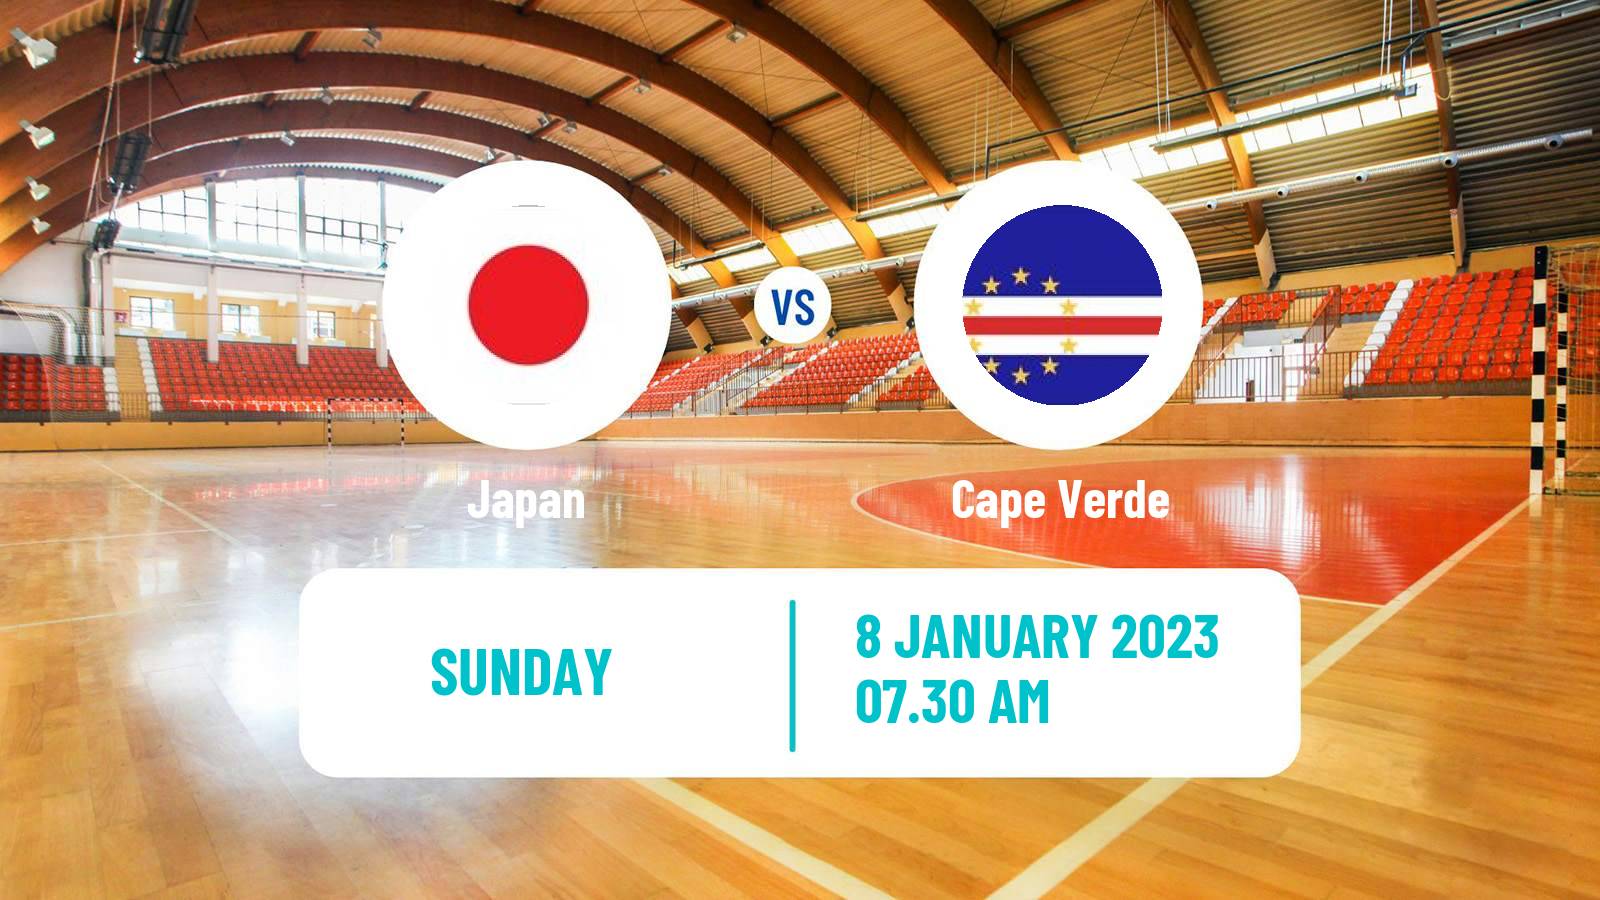 Handball Friendly International Handball Japan - Cape Verde